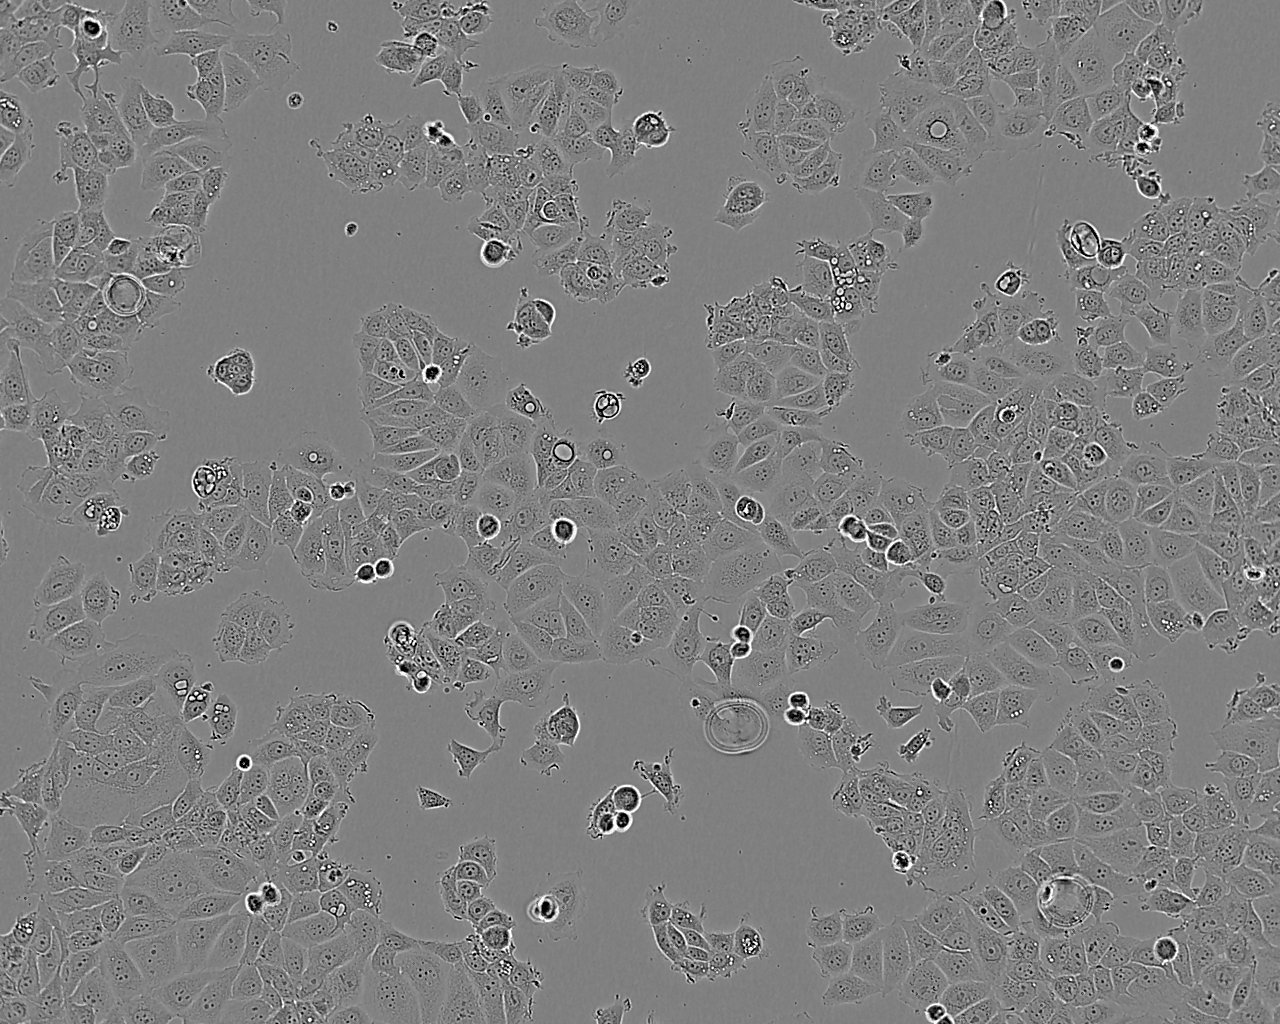 SK-MEL-2 Cells|人恶性黑色素瘤细胞系,SK-MEL-2 Cells